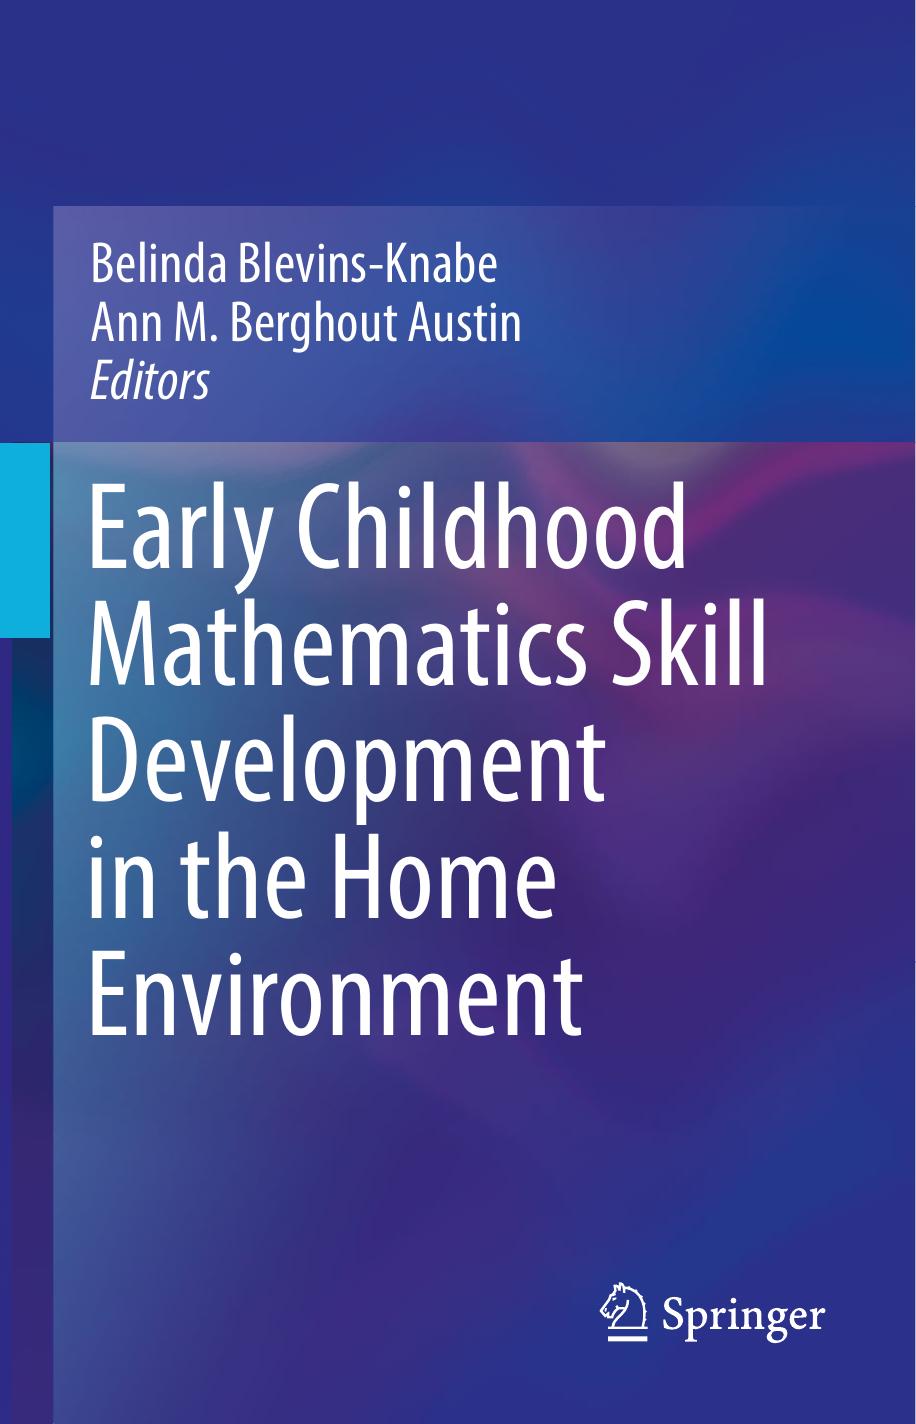 Early Childhood Mathematics Skill Development 2018